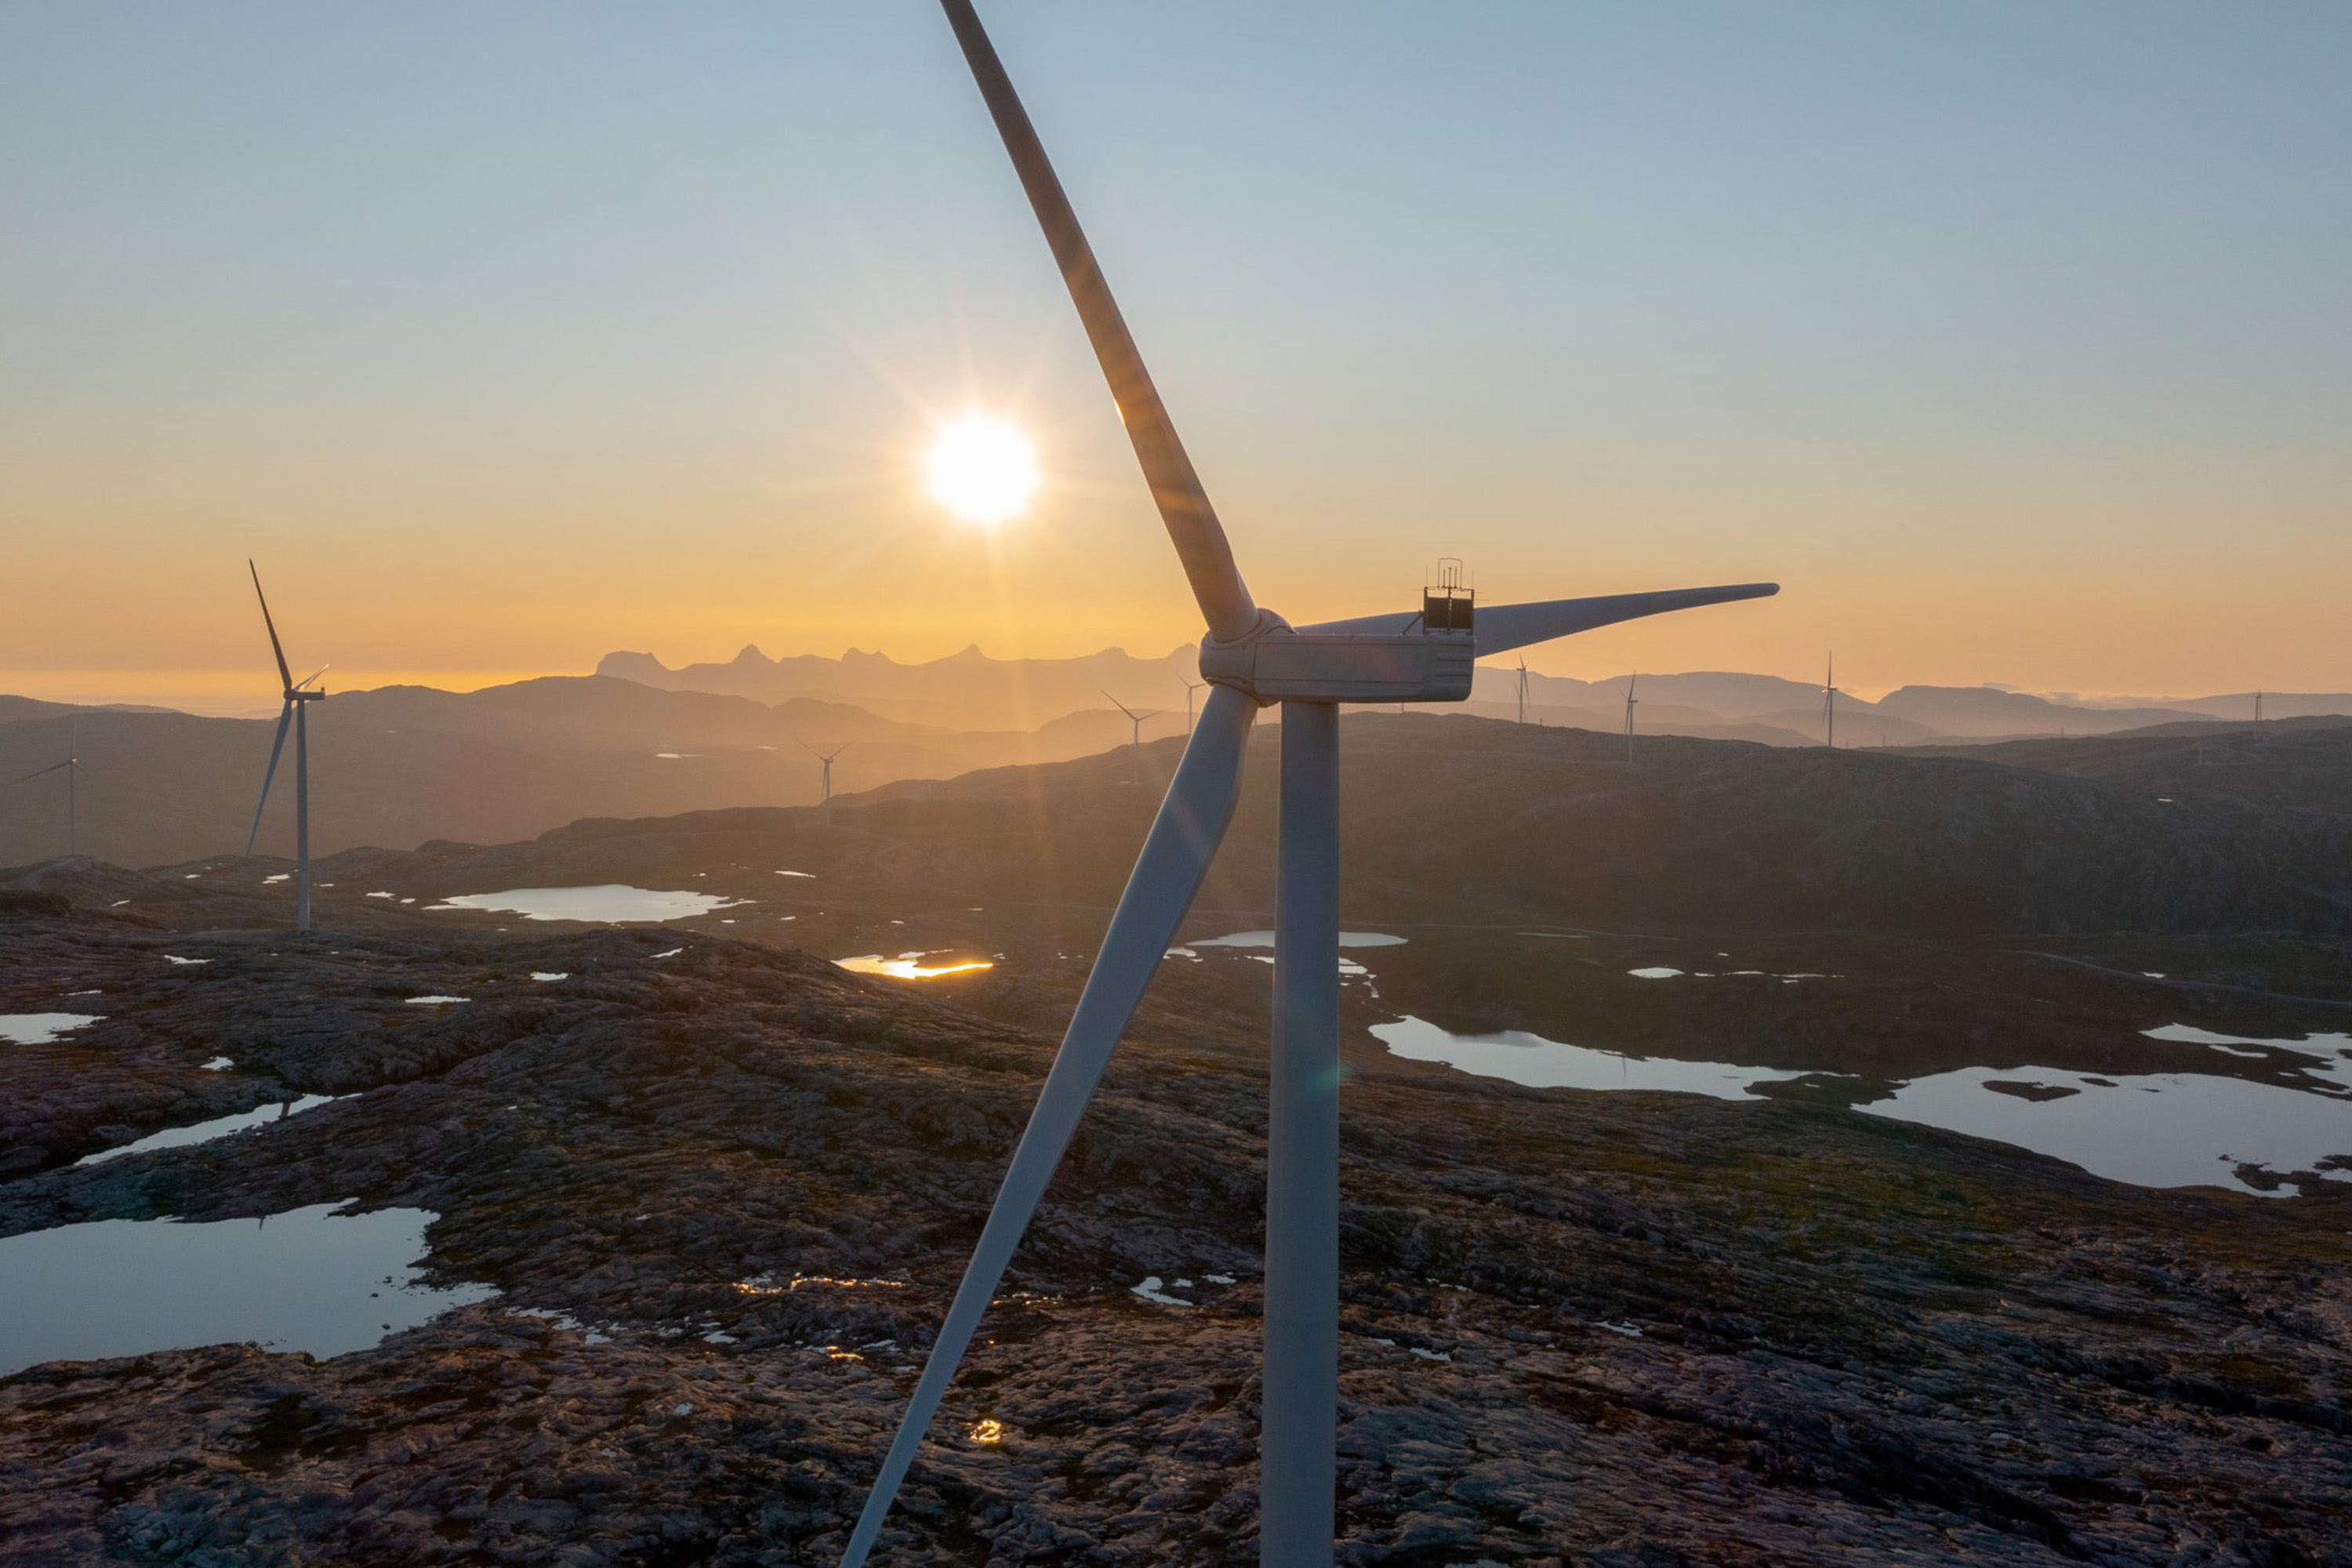 Öyfjellet i Nordnorge är en av Eolus vindkraftsparker i Norge med en kapacitet med 400 MW. Foto: Eolus